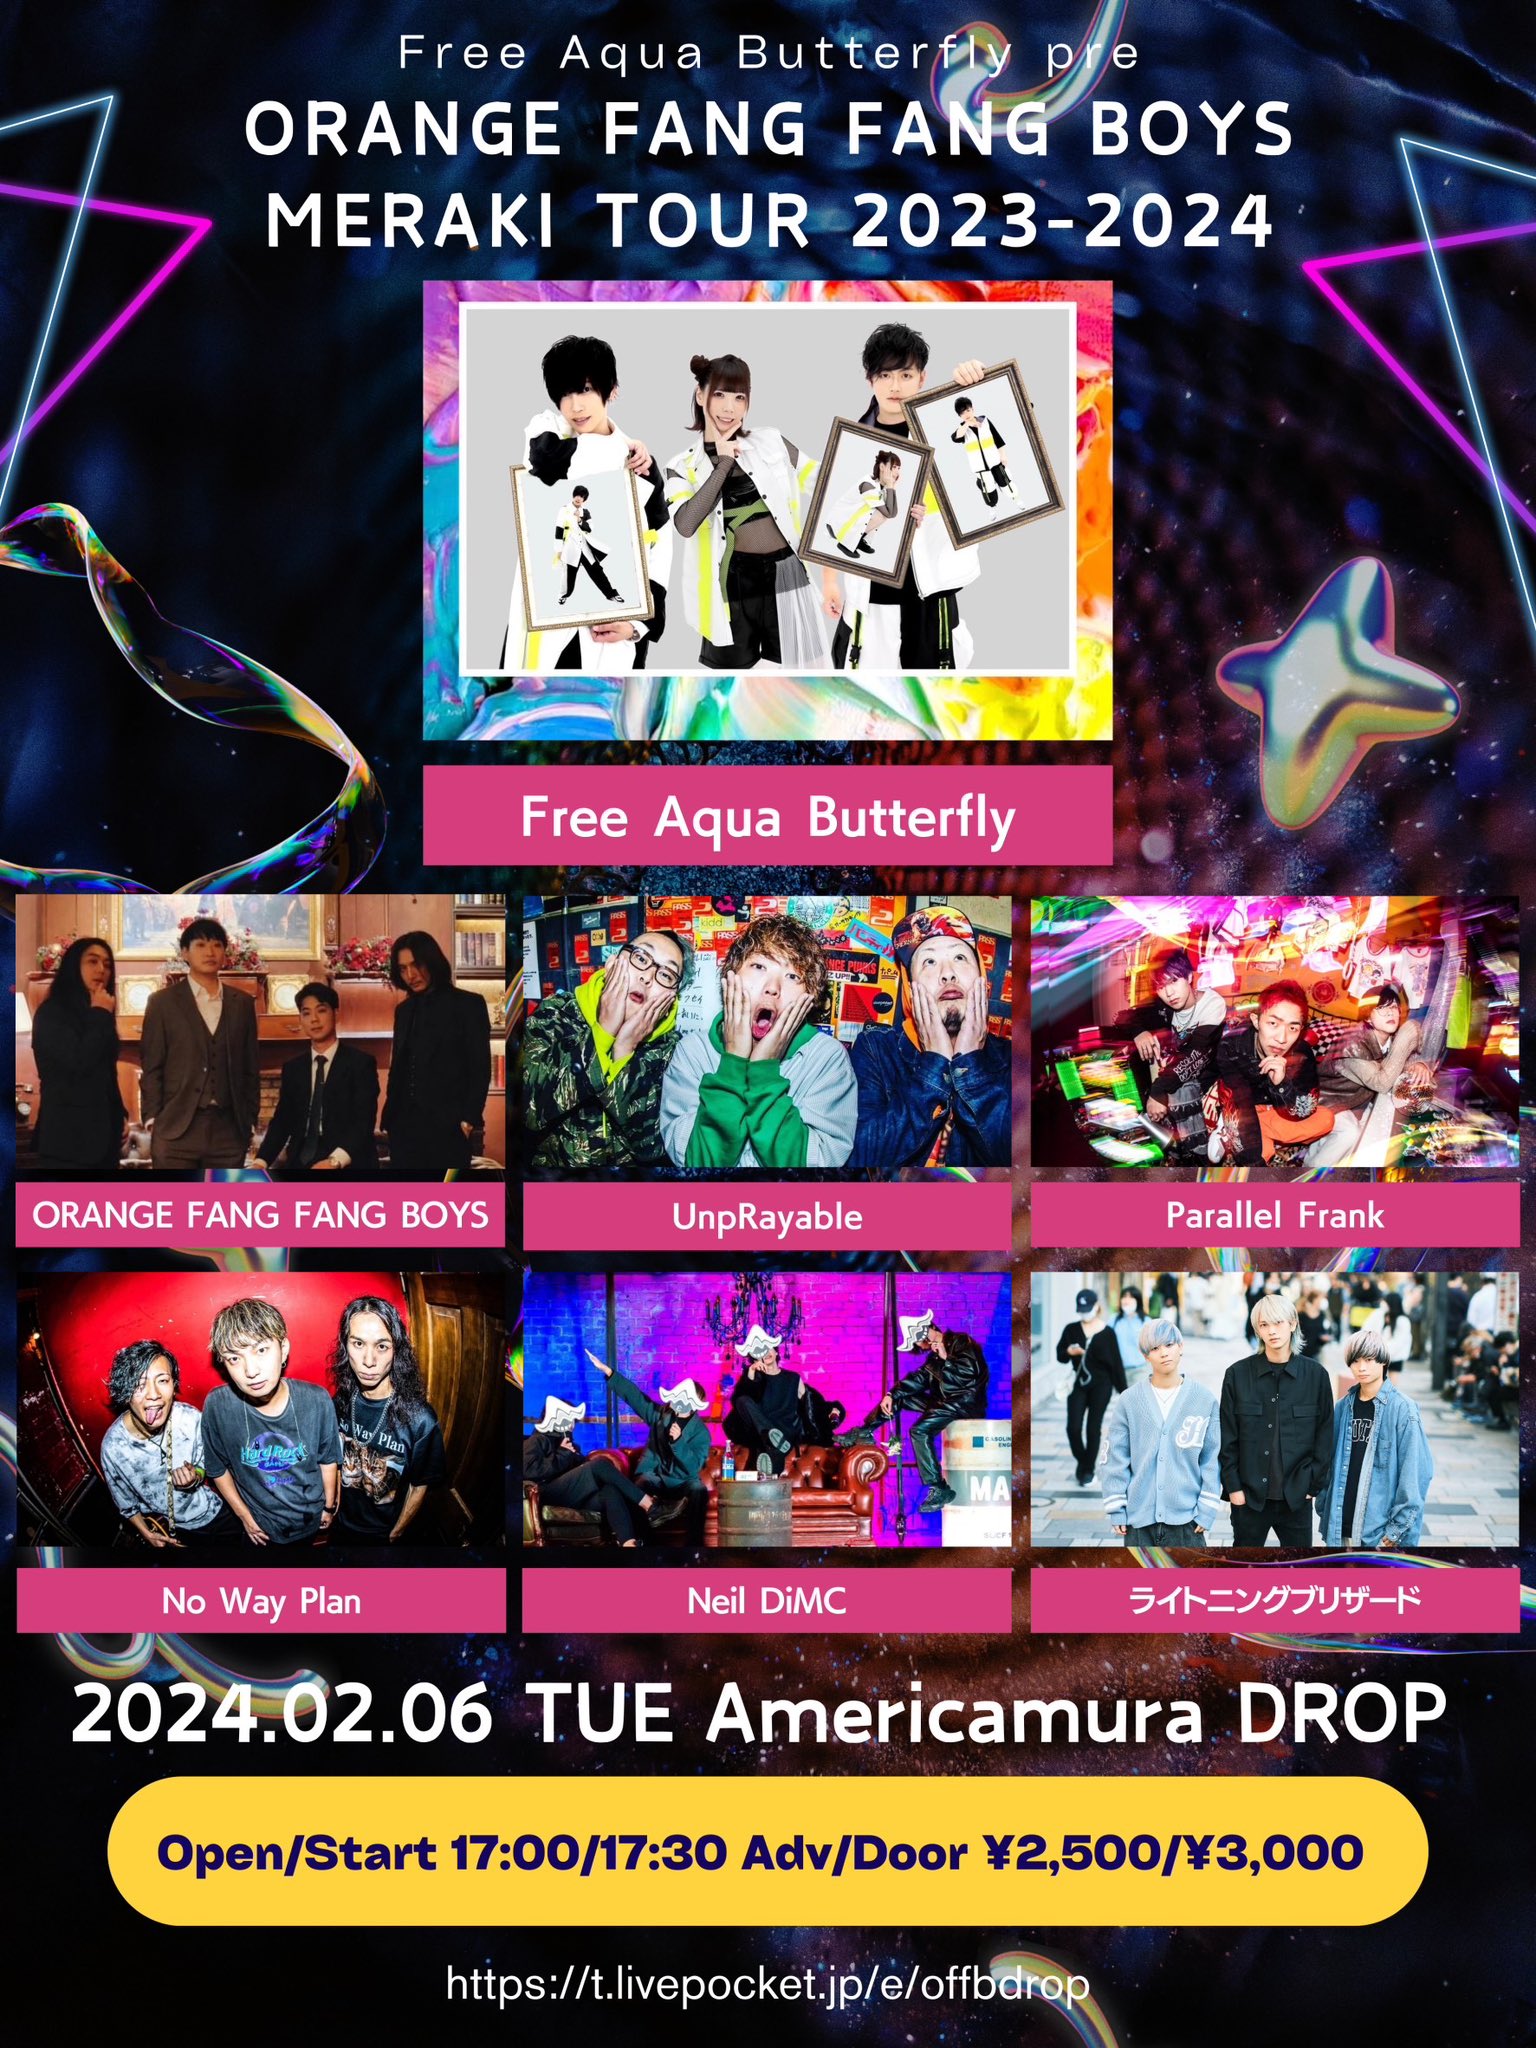 星井あおサポート出演公演(Free Aqua Butterfly)『Free Aqua Butterfly pre. ORANGE FANG FANG BOYS MERAKI TOUR 2023-2024』